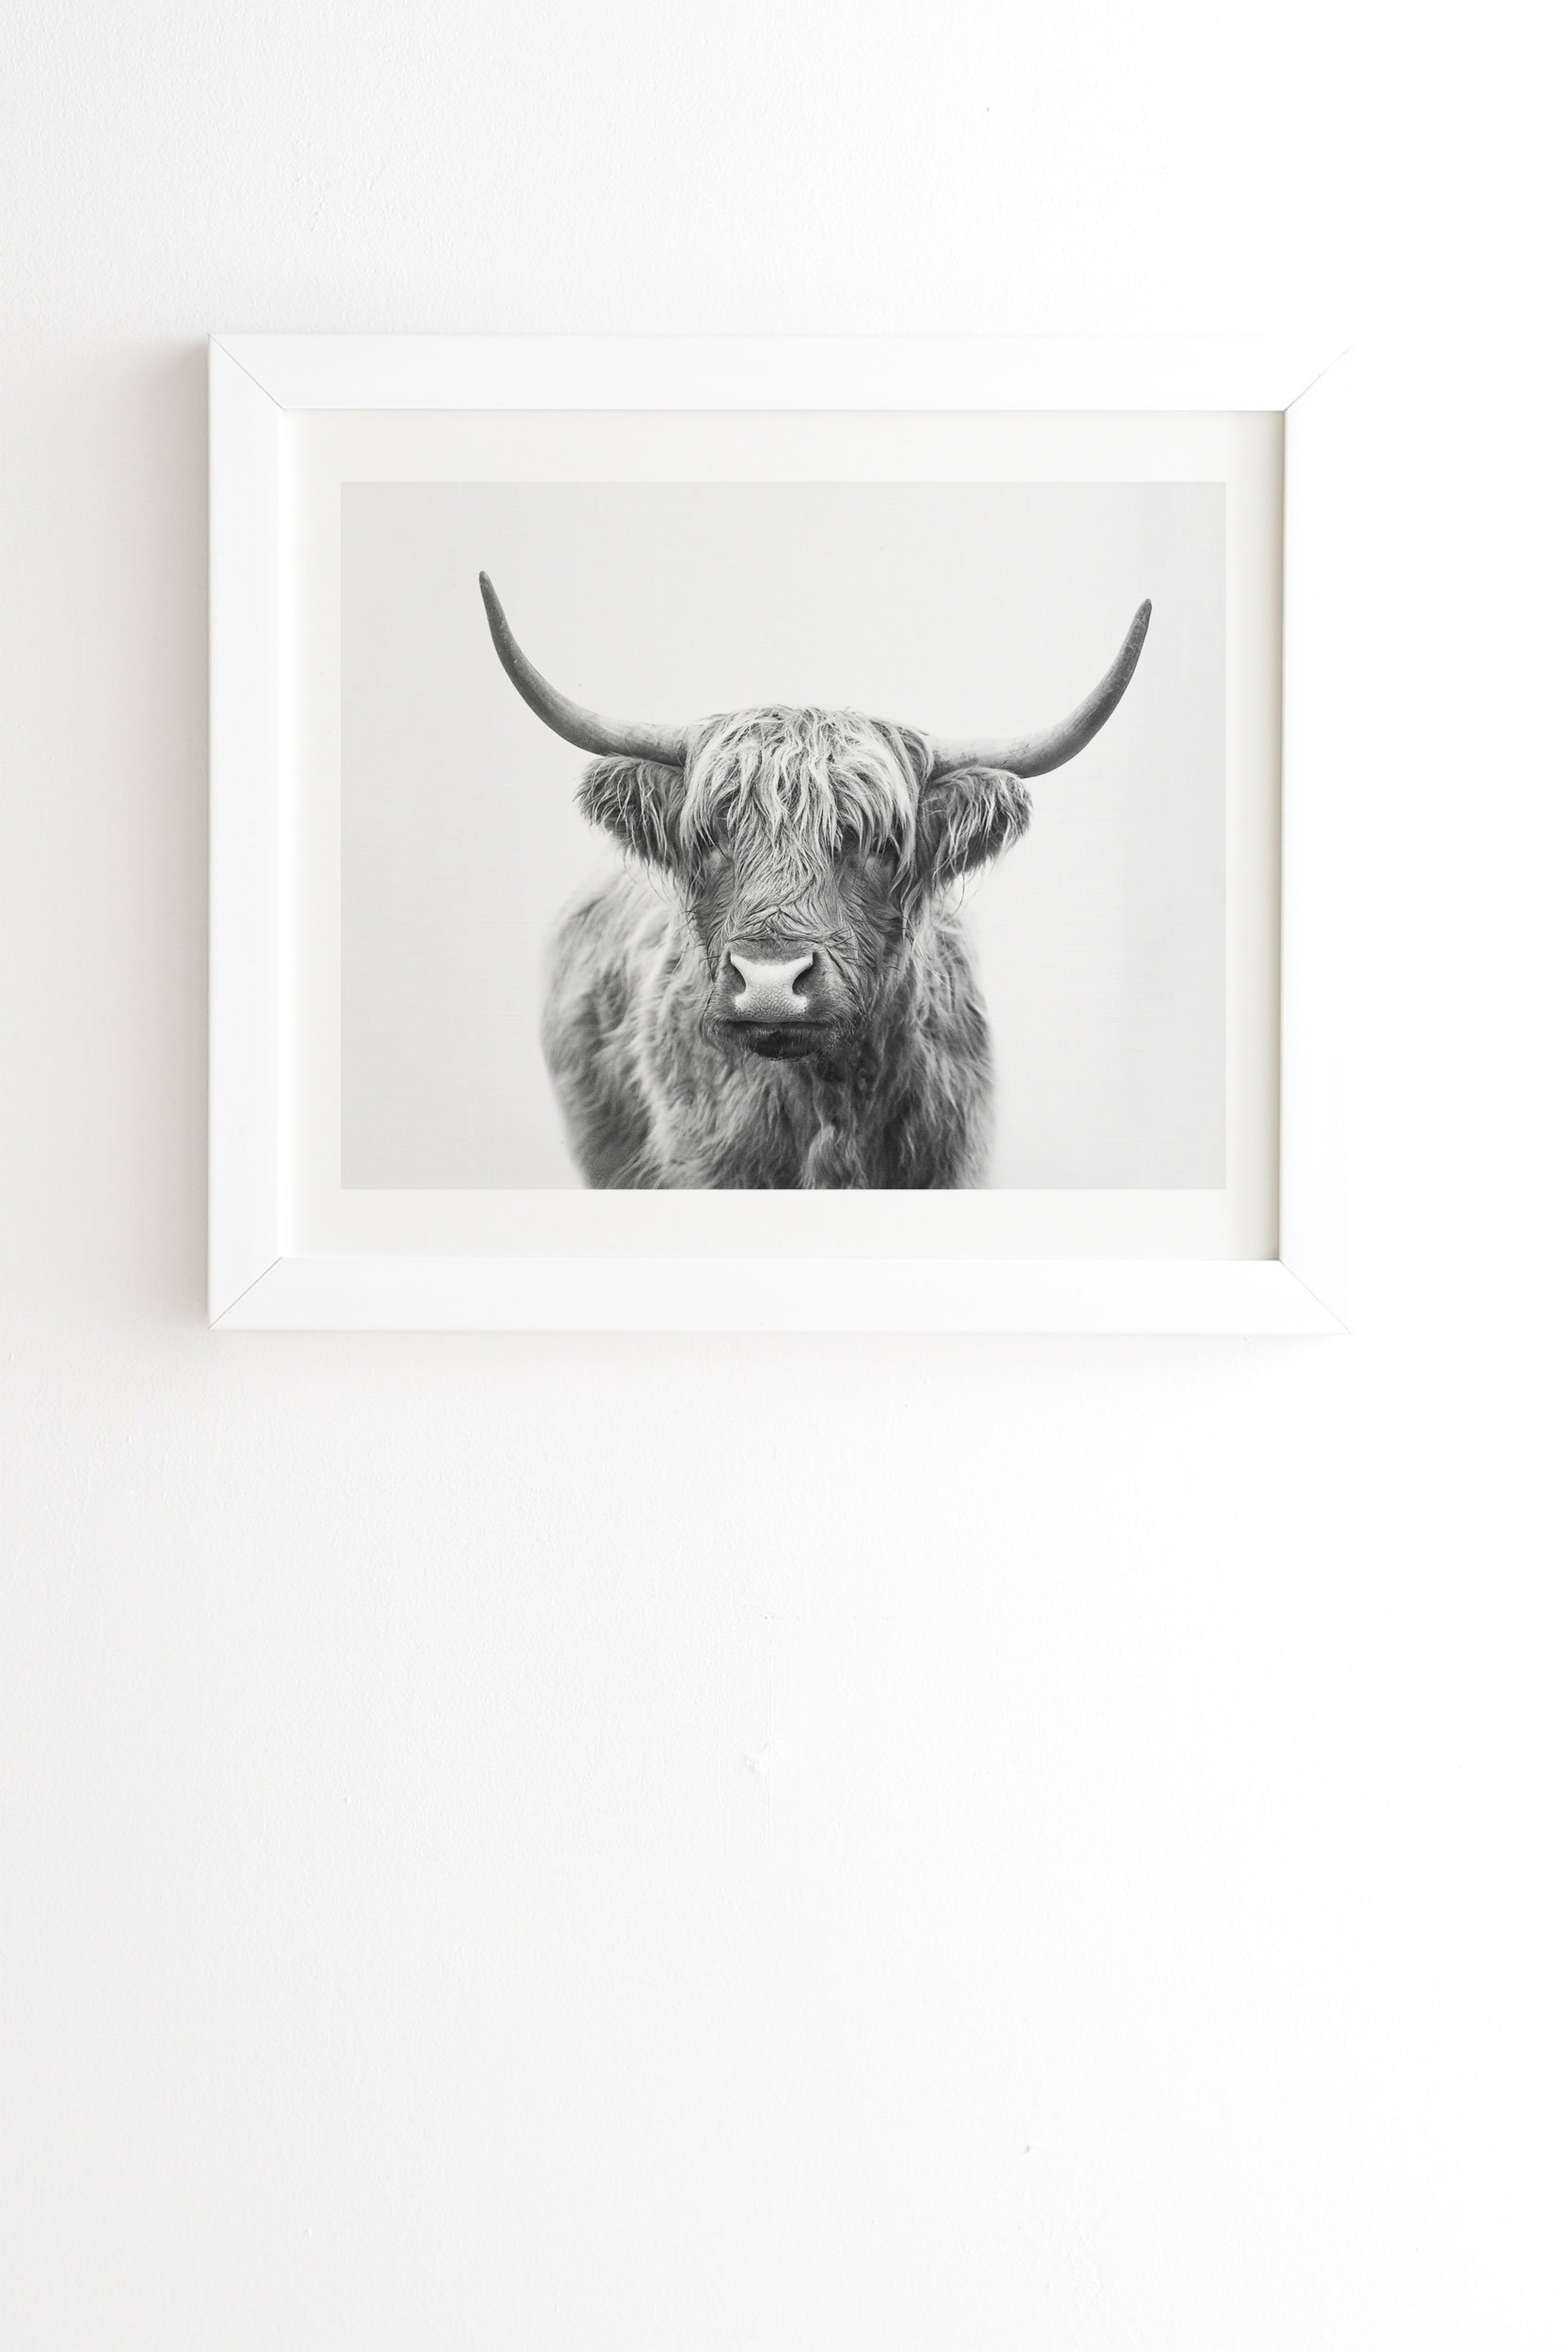 Framed Wall Art White, Highland Bull, 8" x 9.5" - Wander Print Co.